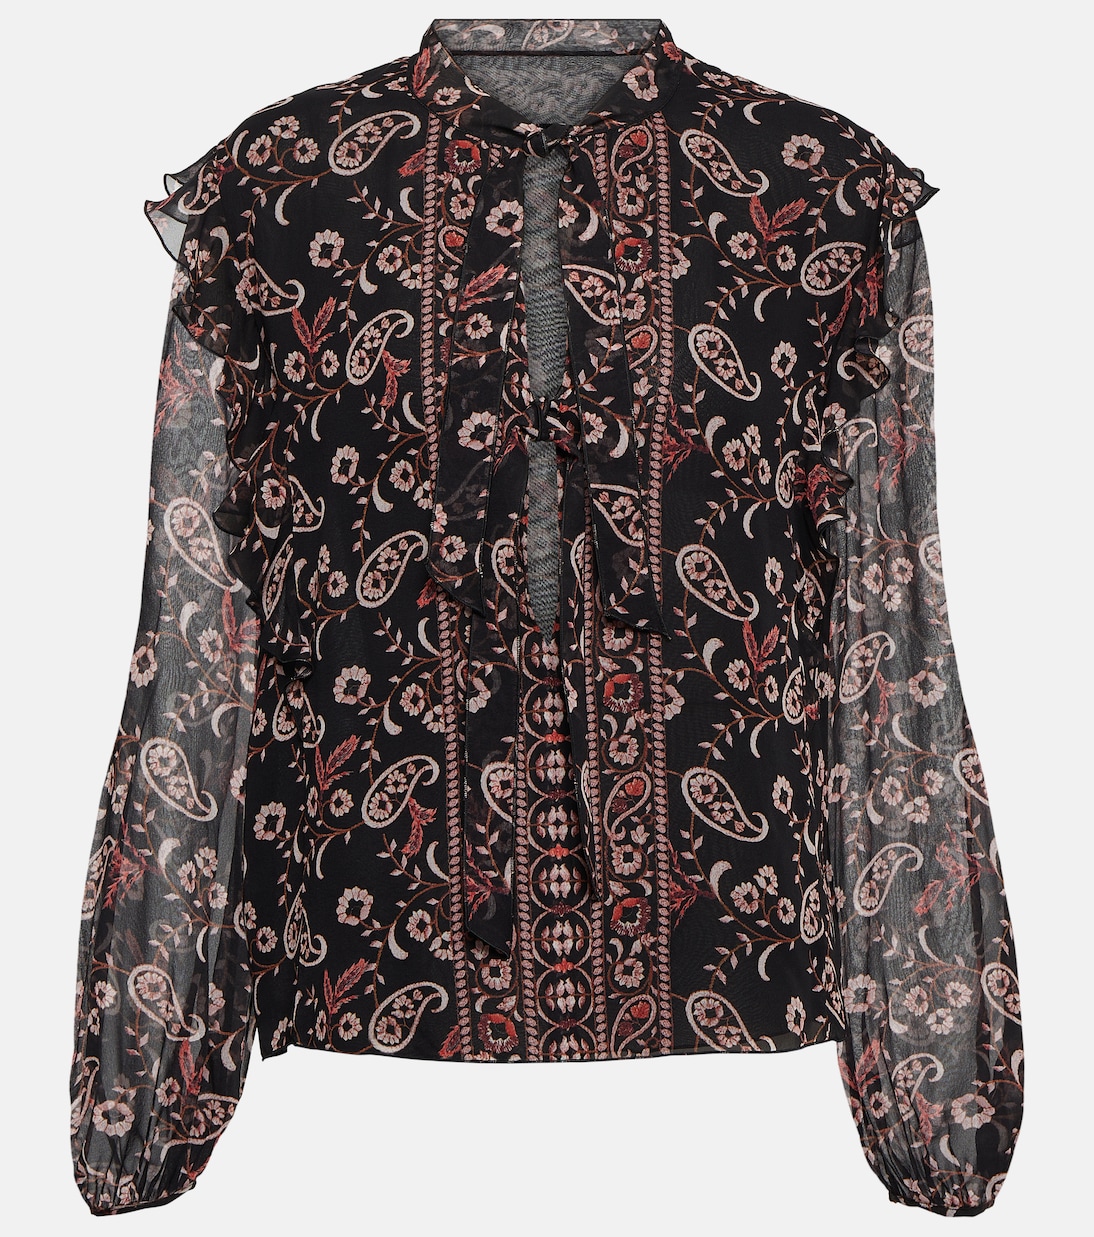 Шелковая блузка с принтом Giambattista Valli, мультиколор шелковая блузка со сборками с цветочным принтом giambattista valli розовый